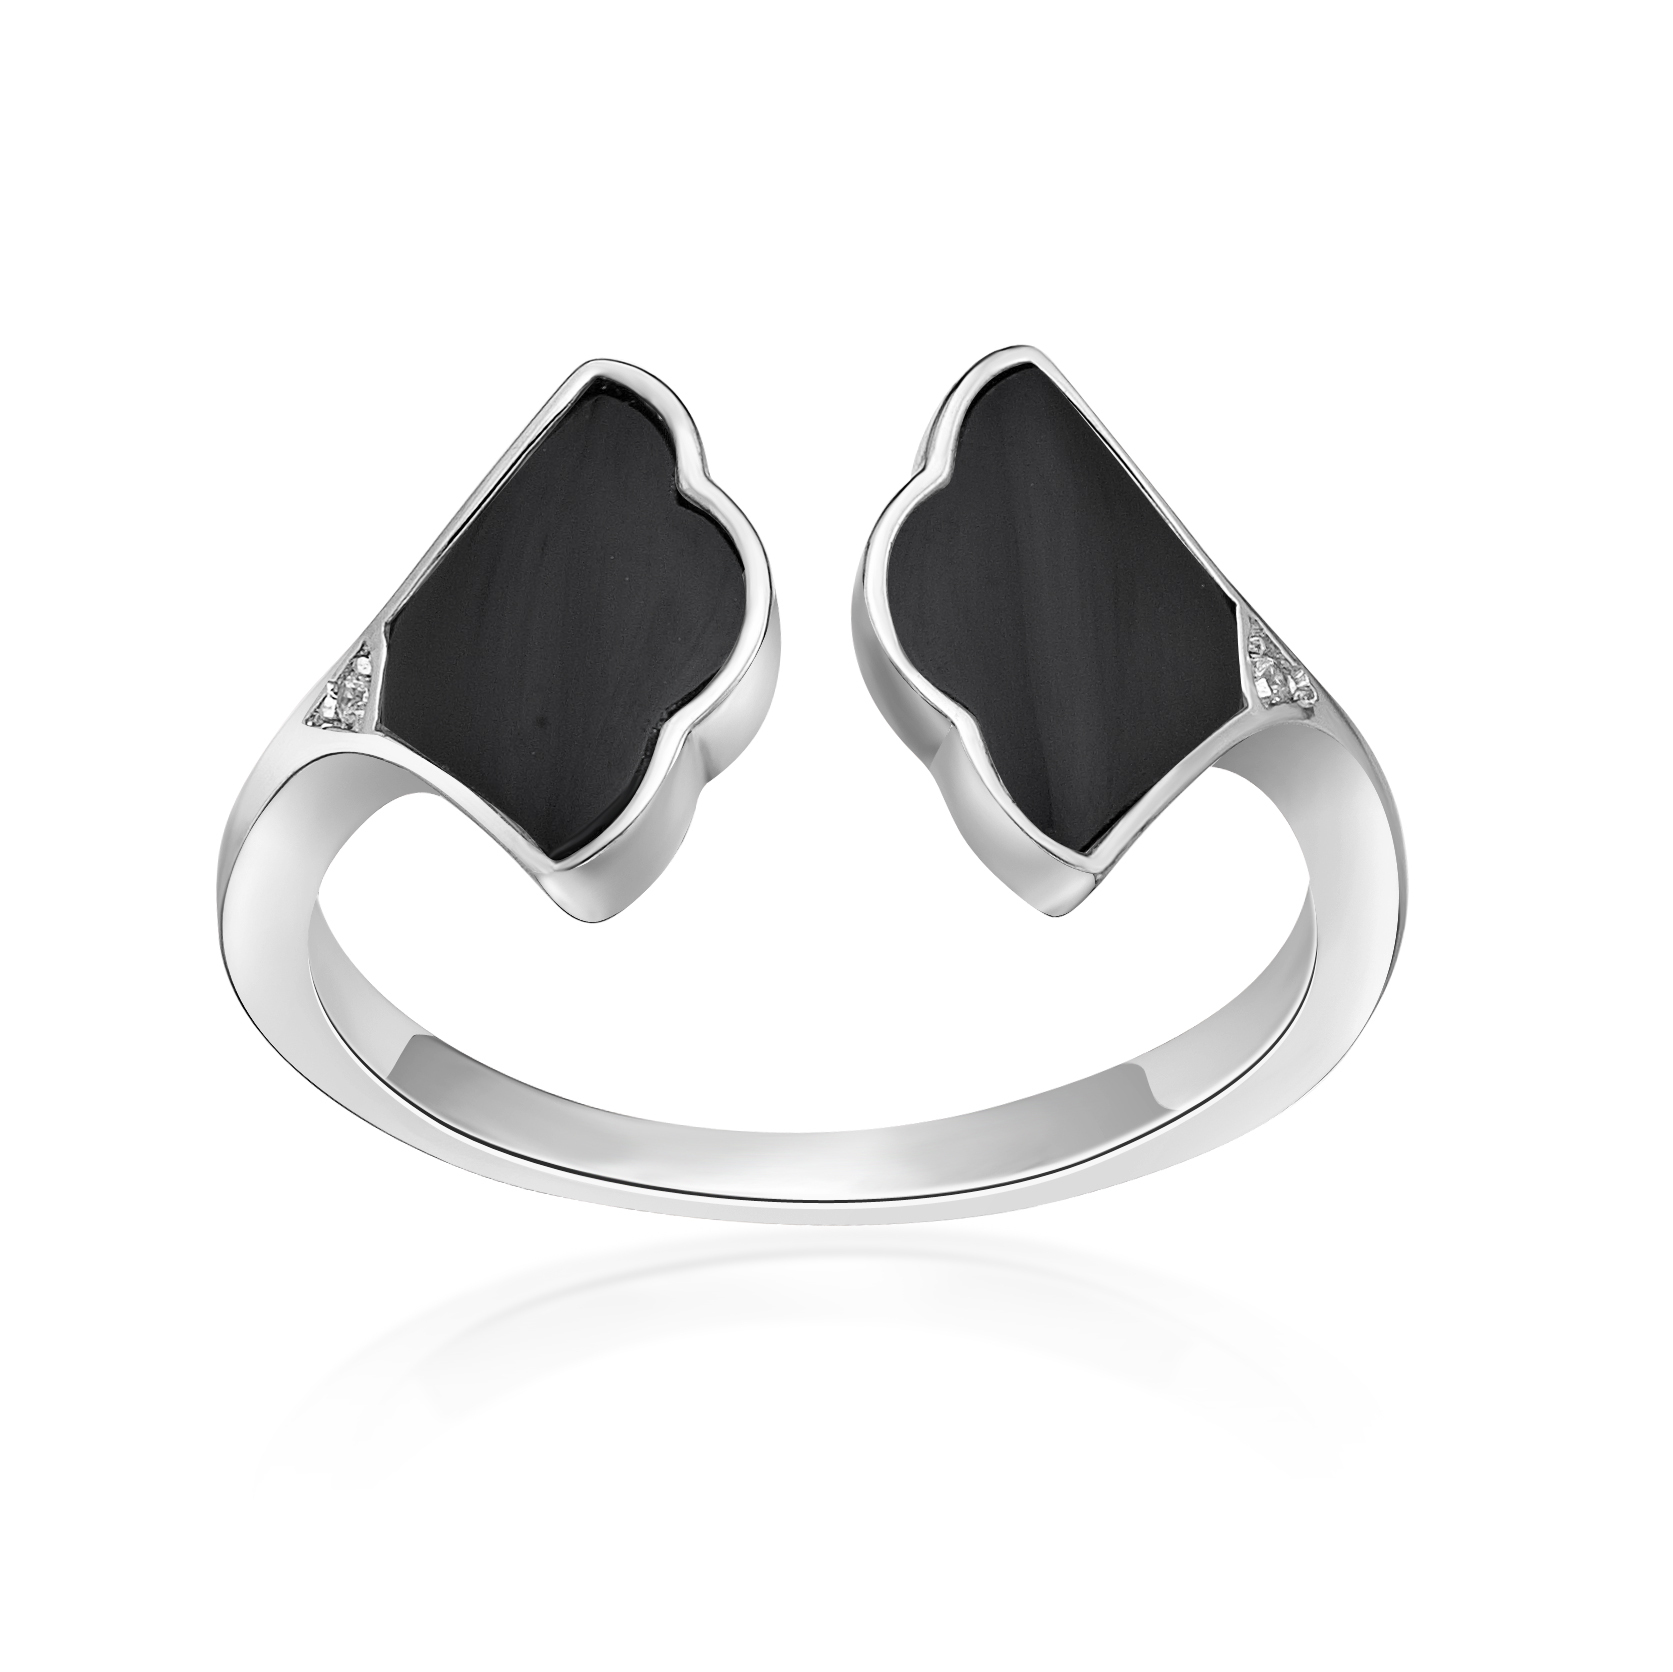 Lavari Jewelers Women's Black Onyx Open Fan Ring, 925 Sterling Silver, Cubic Zirconia